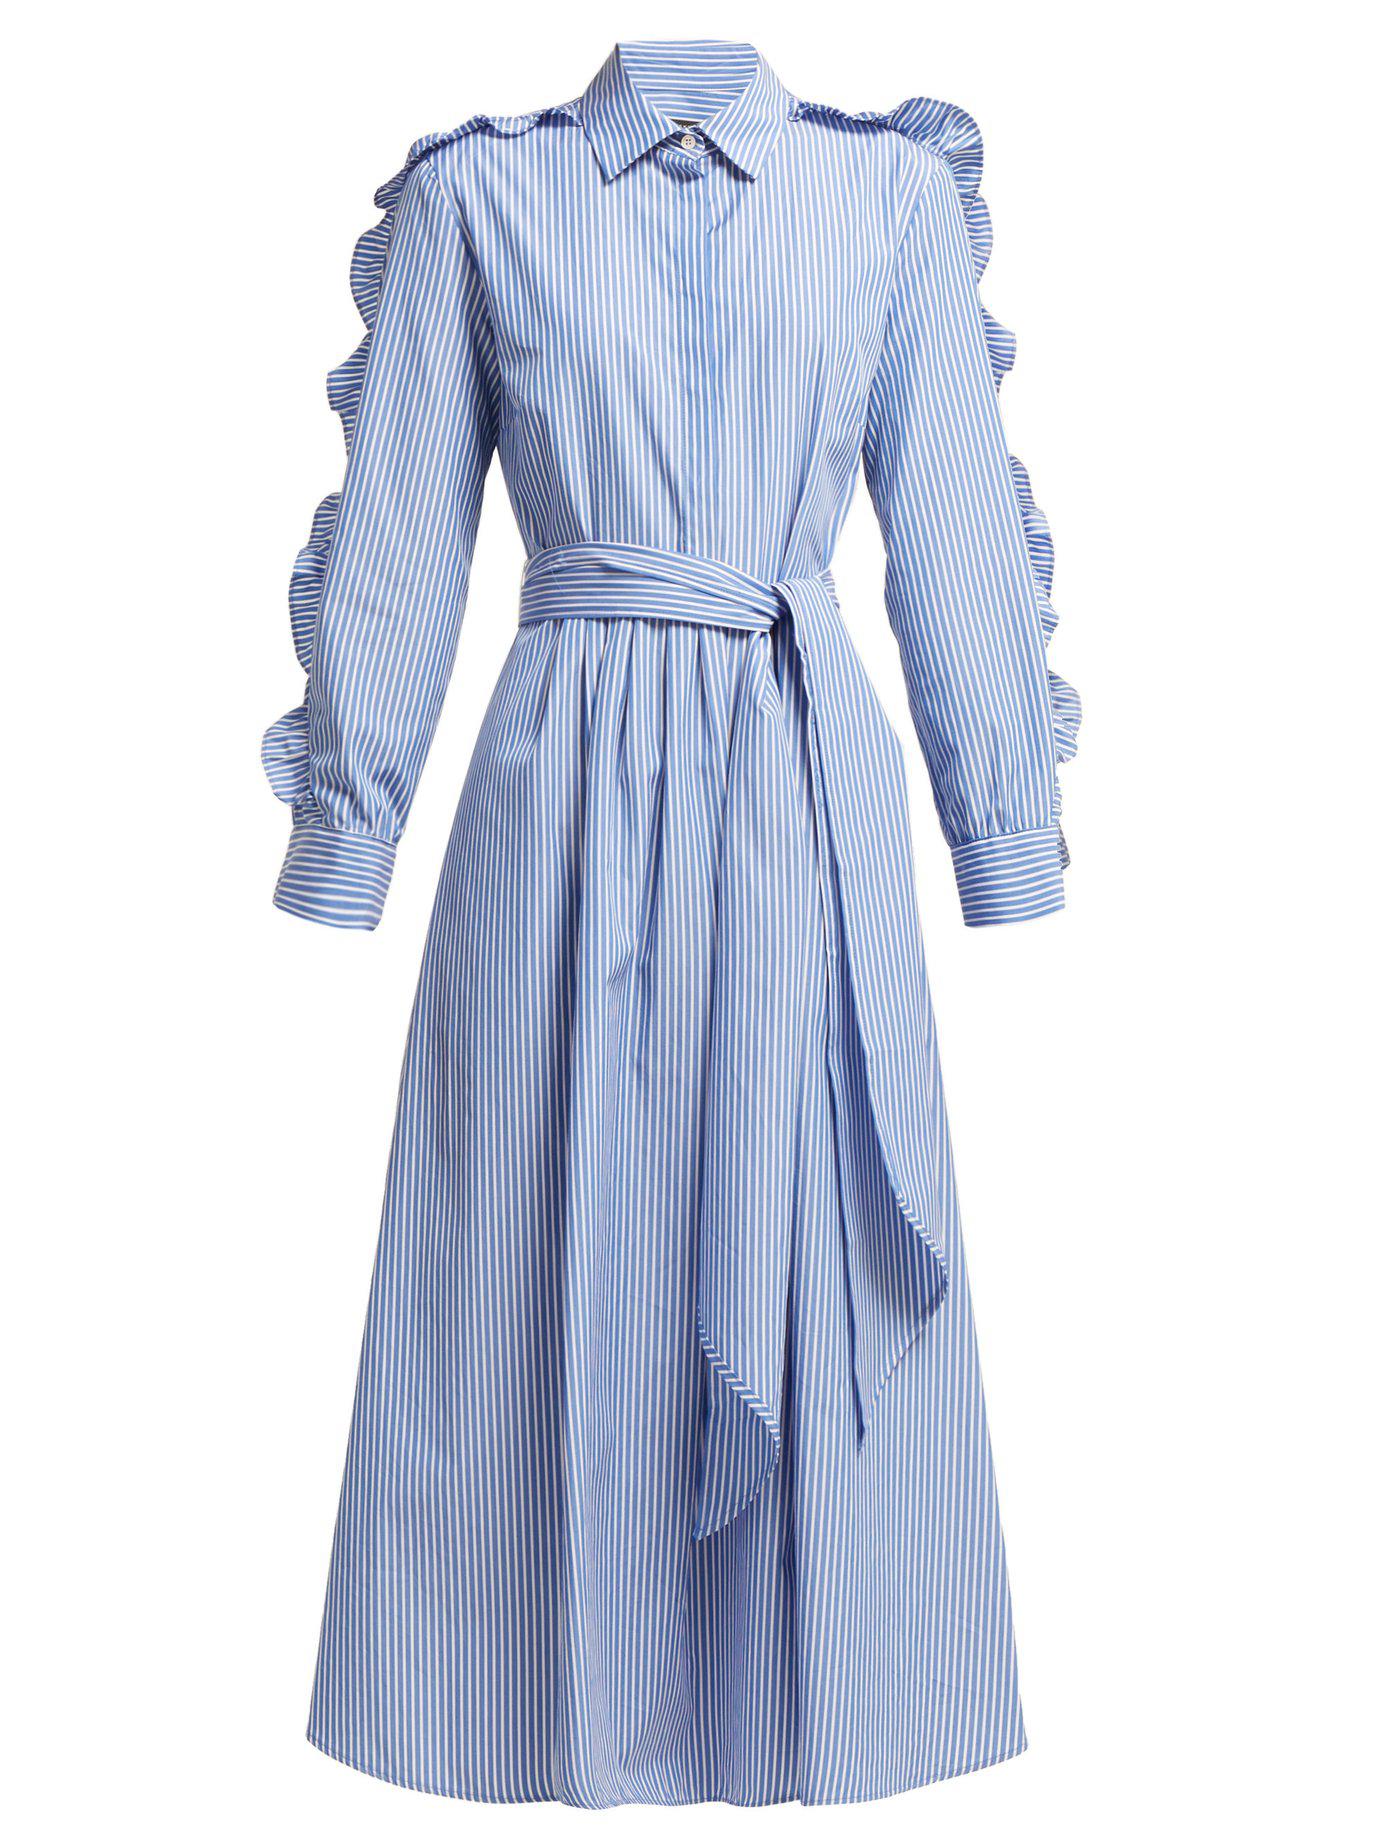 Weekend by Maxmara Cotton Canon Dress in Blue Stripe (Blue) - Lyst